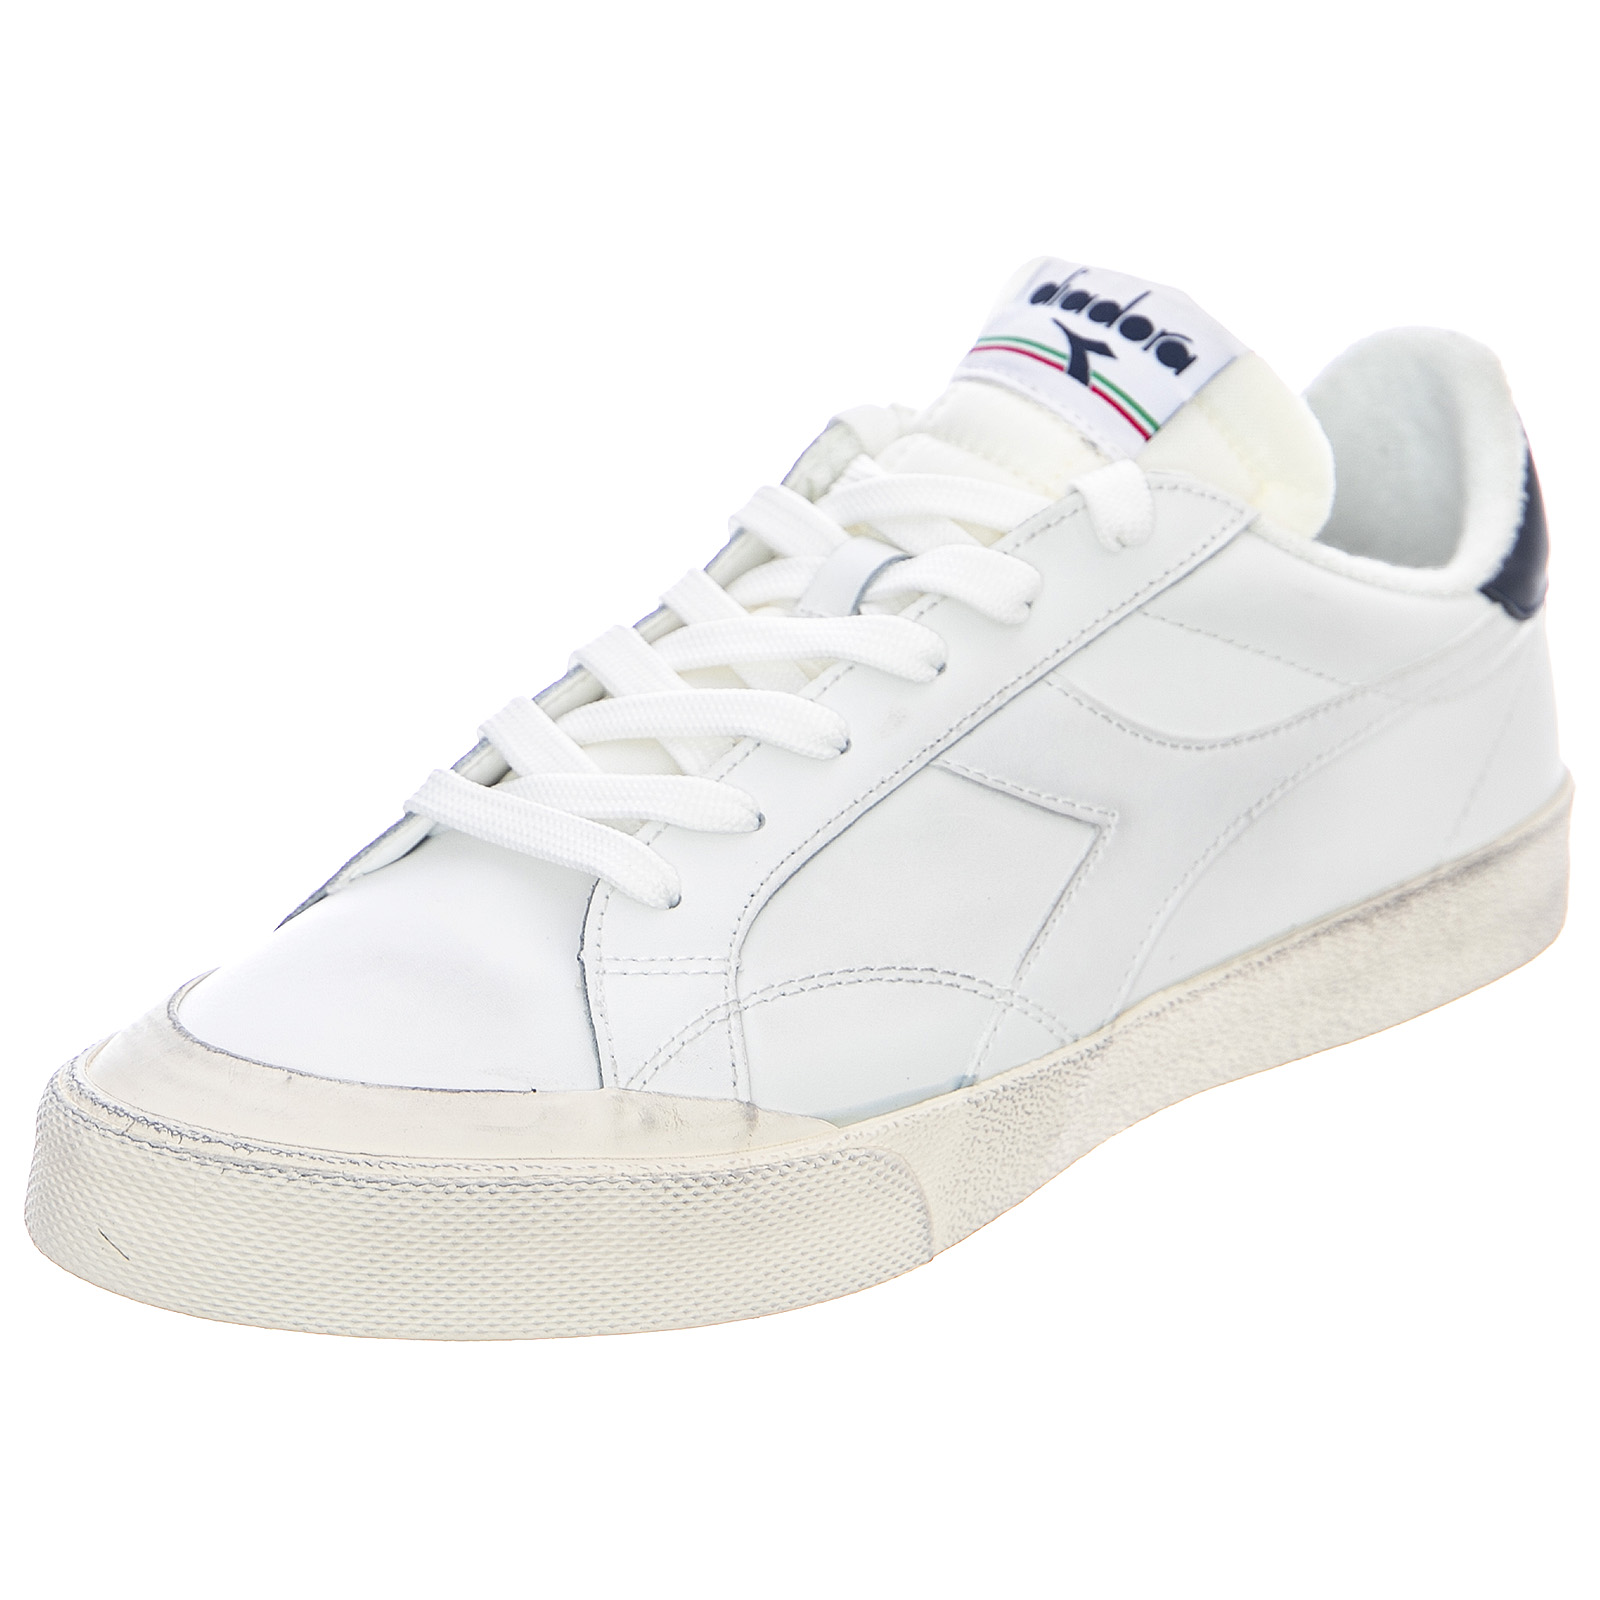 Diadora melody dirty sneakers - white - scarpe basse uomo bianche bianco |  eBay